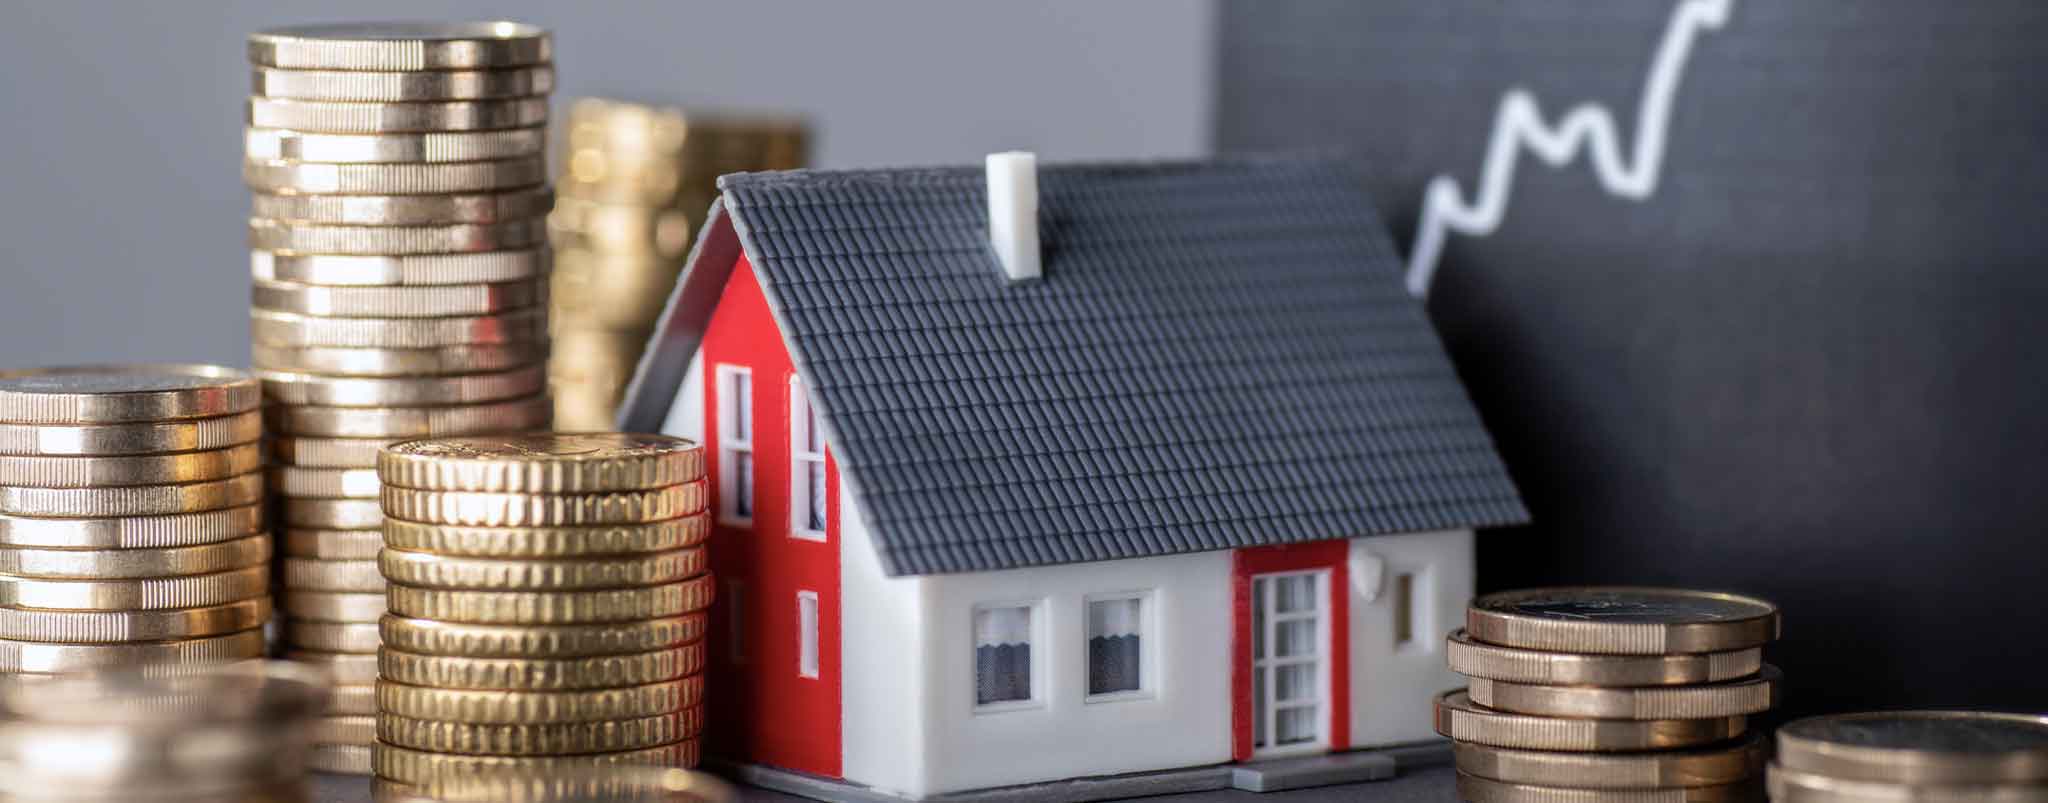 Aantal aflossingsvrije hypotheken met verhoogd risico nemen drastisch af